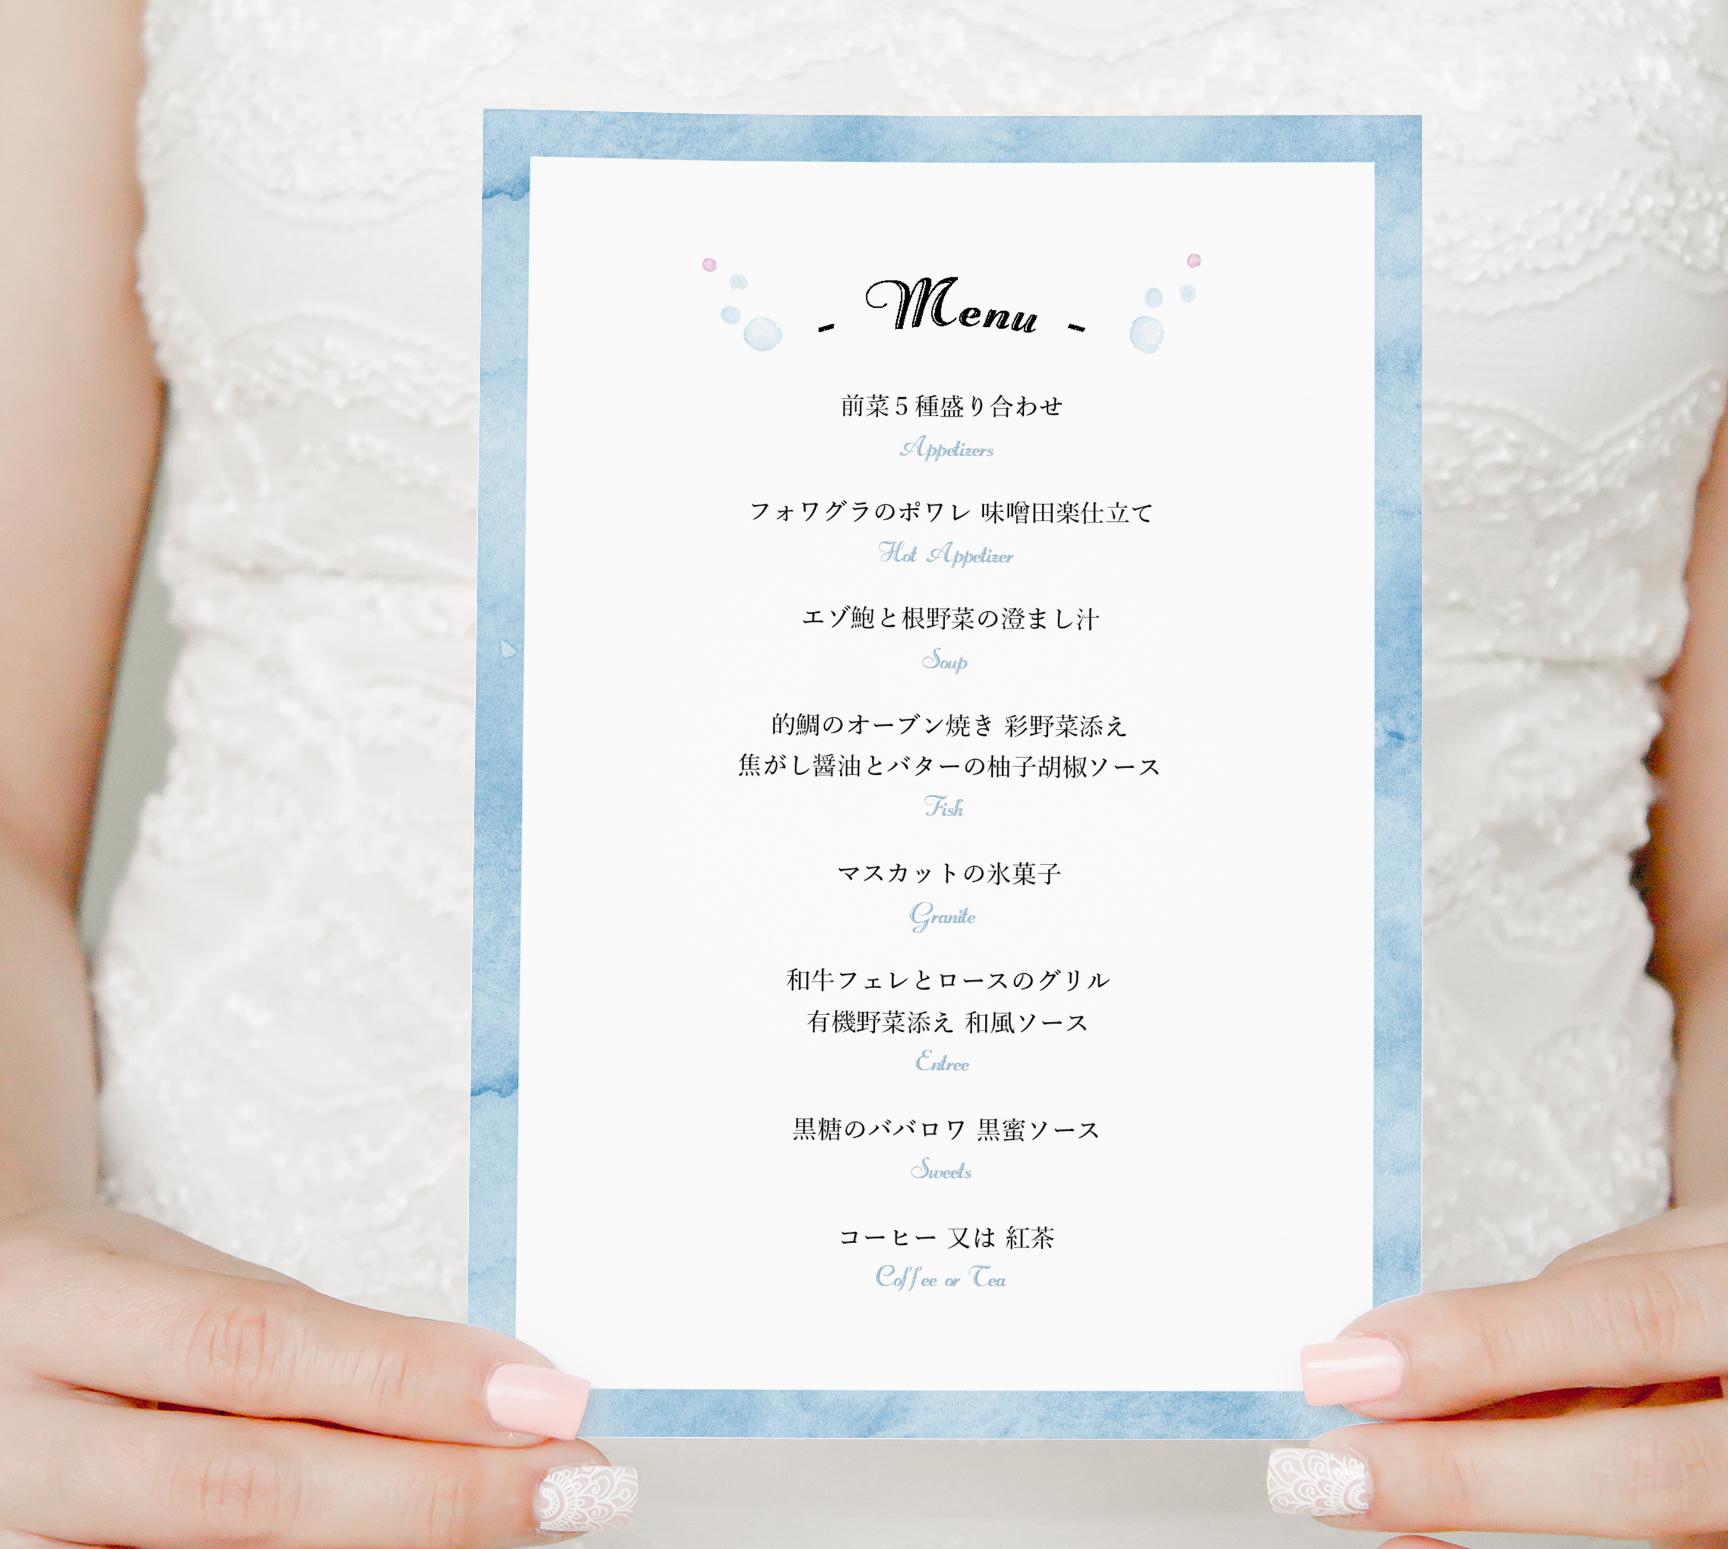 【100+】 結婚 式 メニュー 表 画像 最優秀作品賞 2020